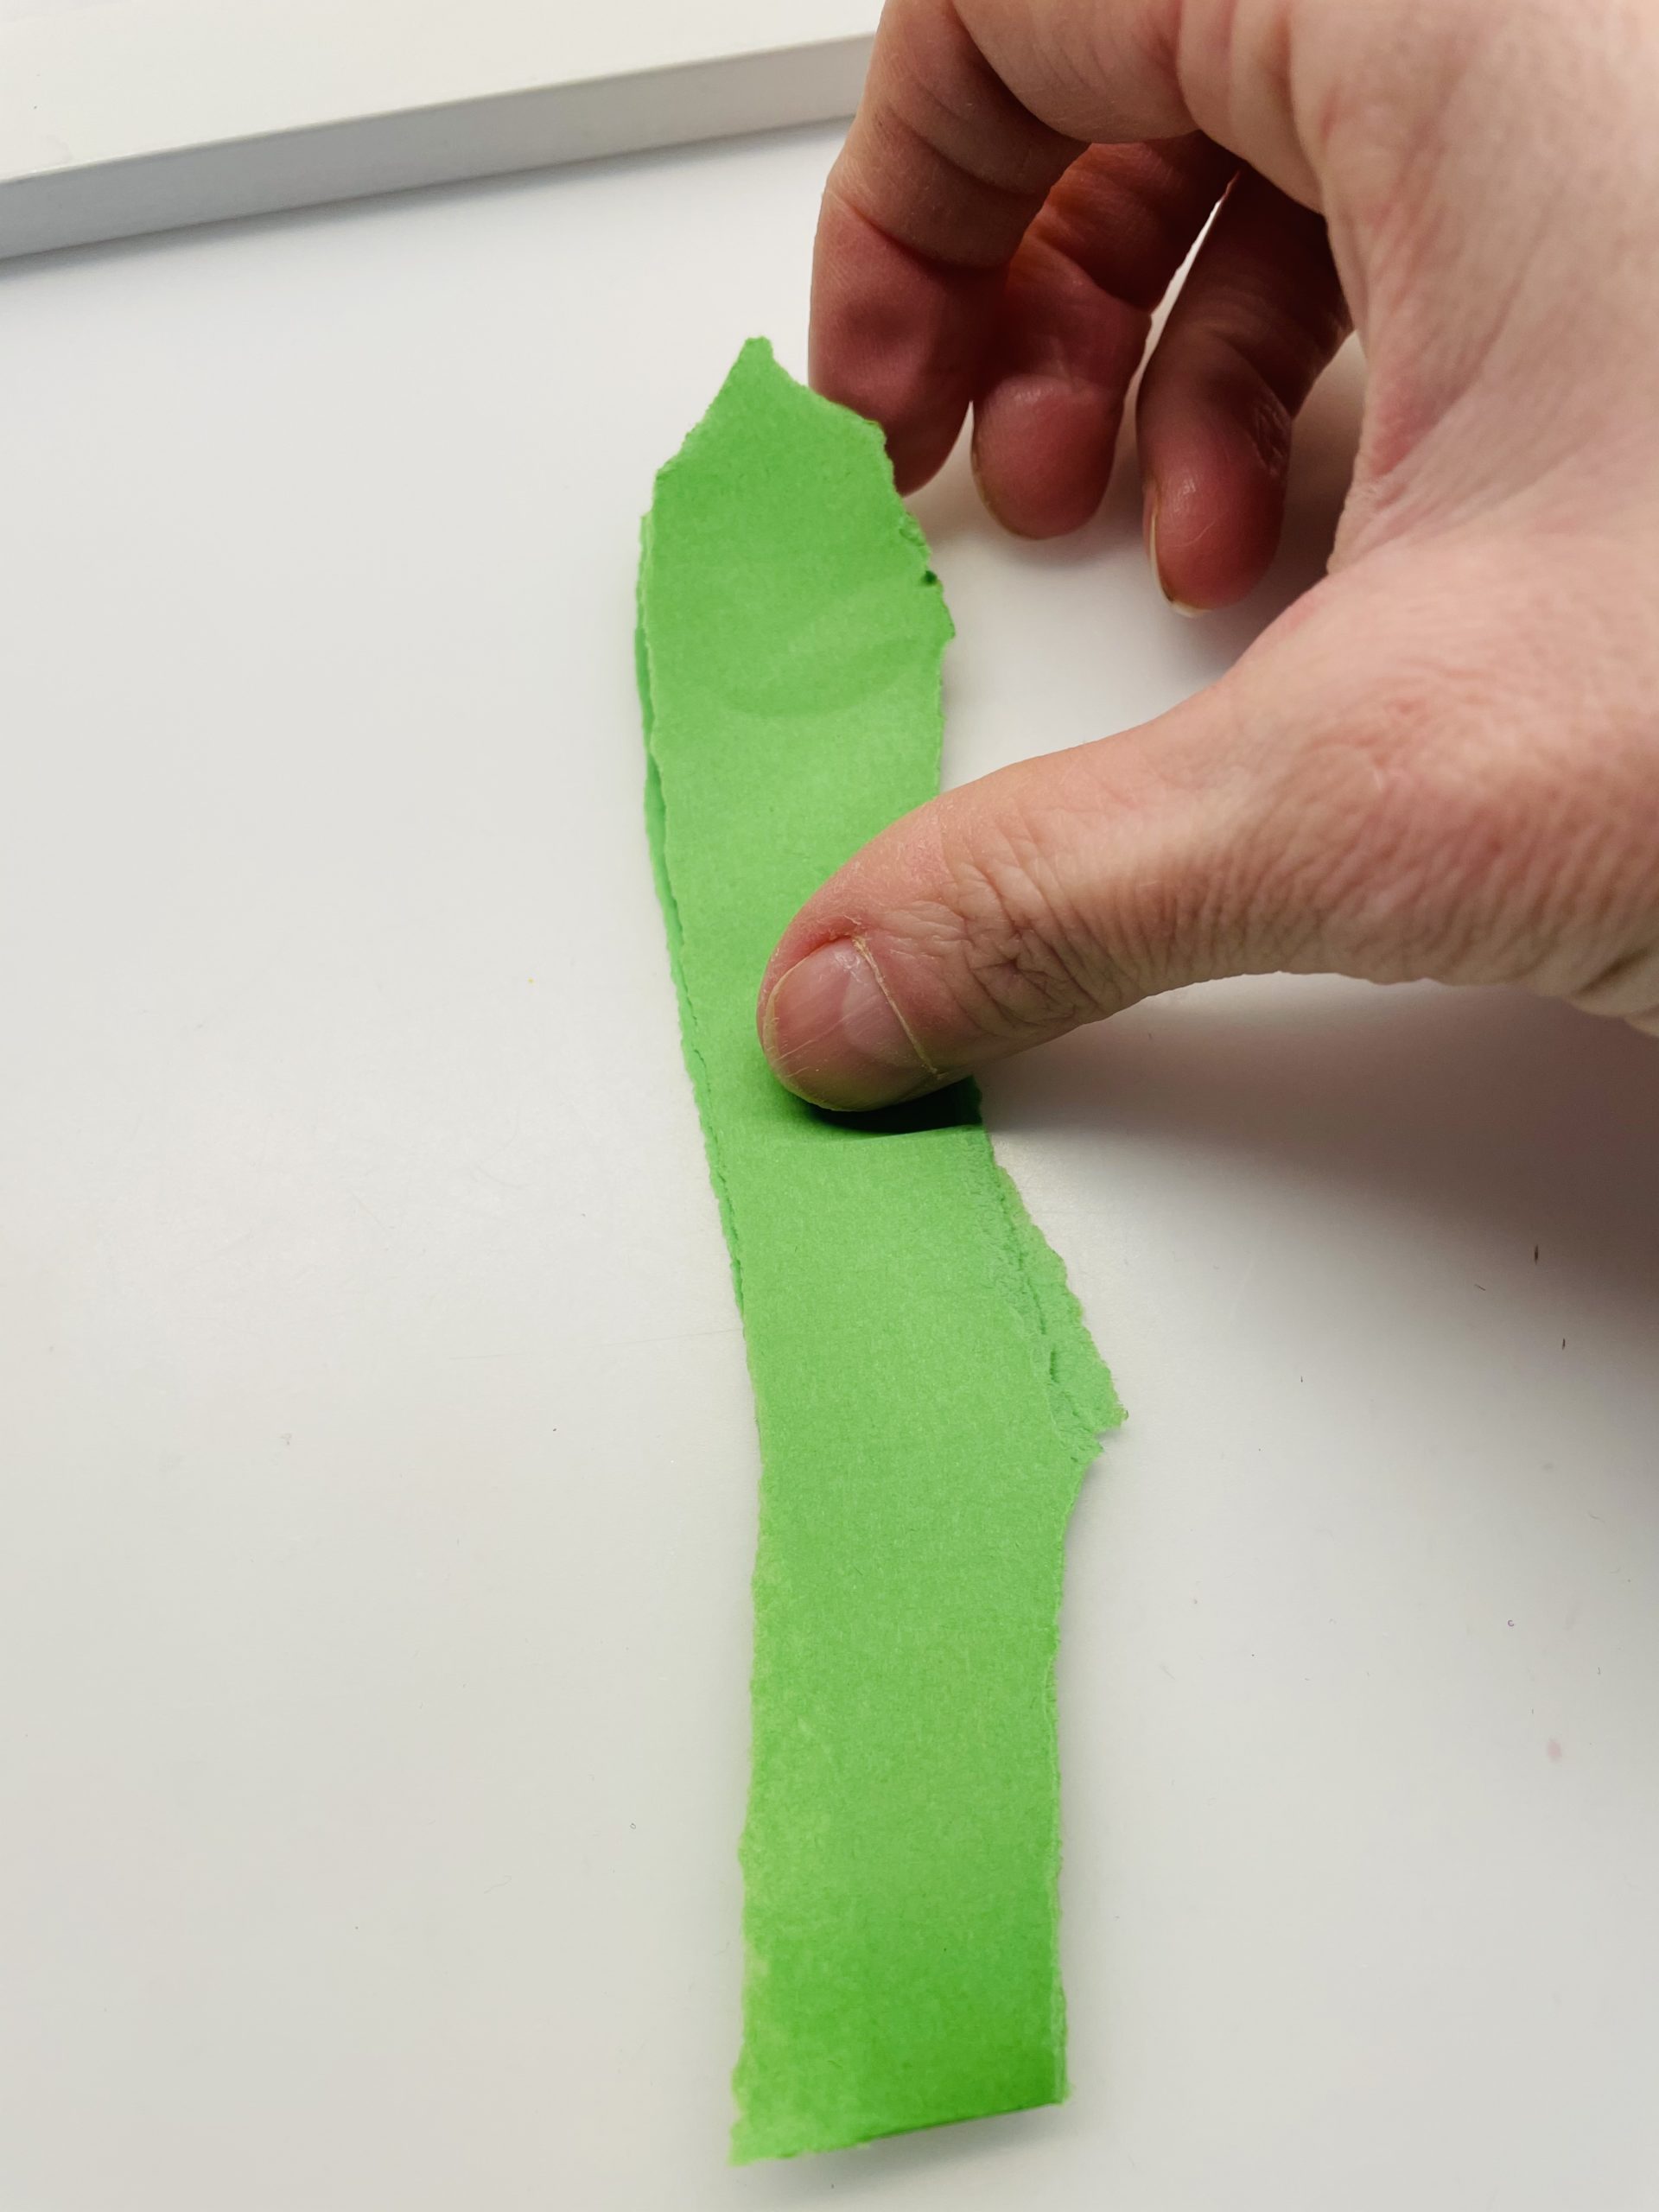 Bild zum Schritt 9 für das Bastel- und DIY-Abenteuer für Kinder: 'Klappt nun das grüne Papier in der Mitte zusammen. Es...'